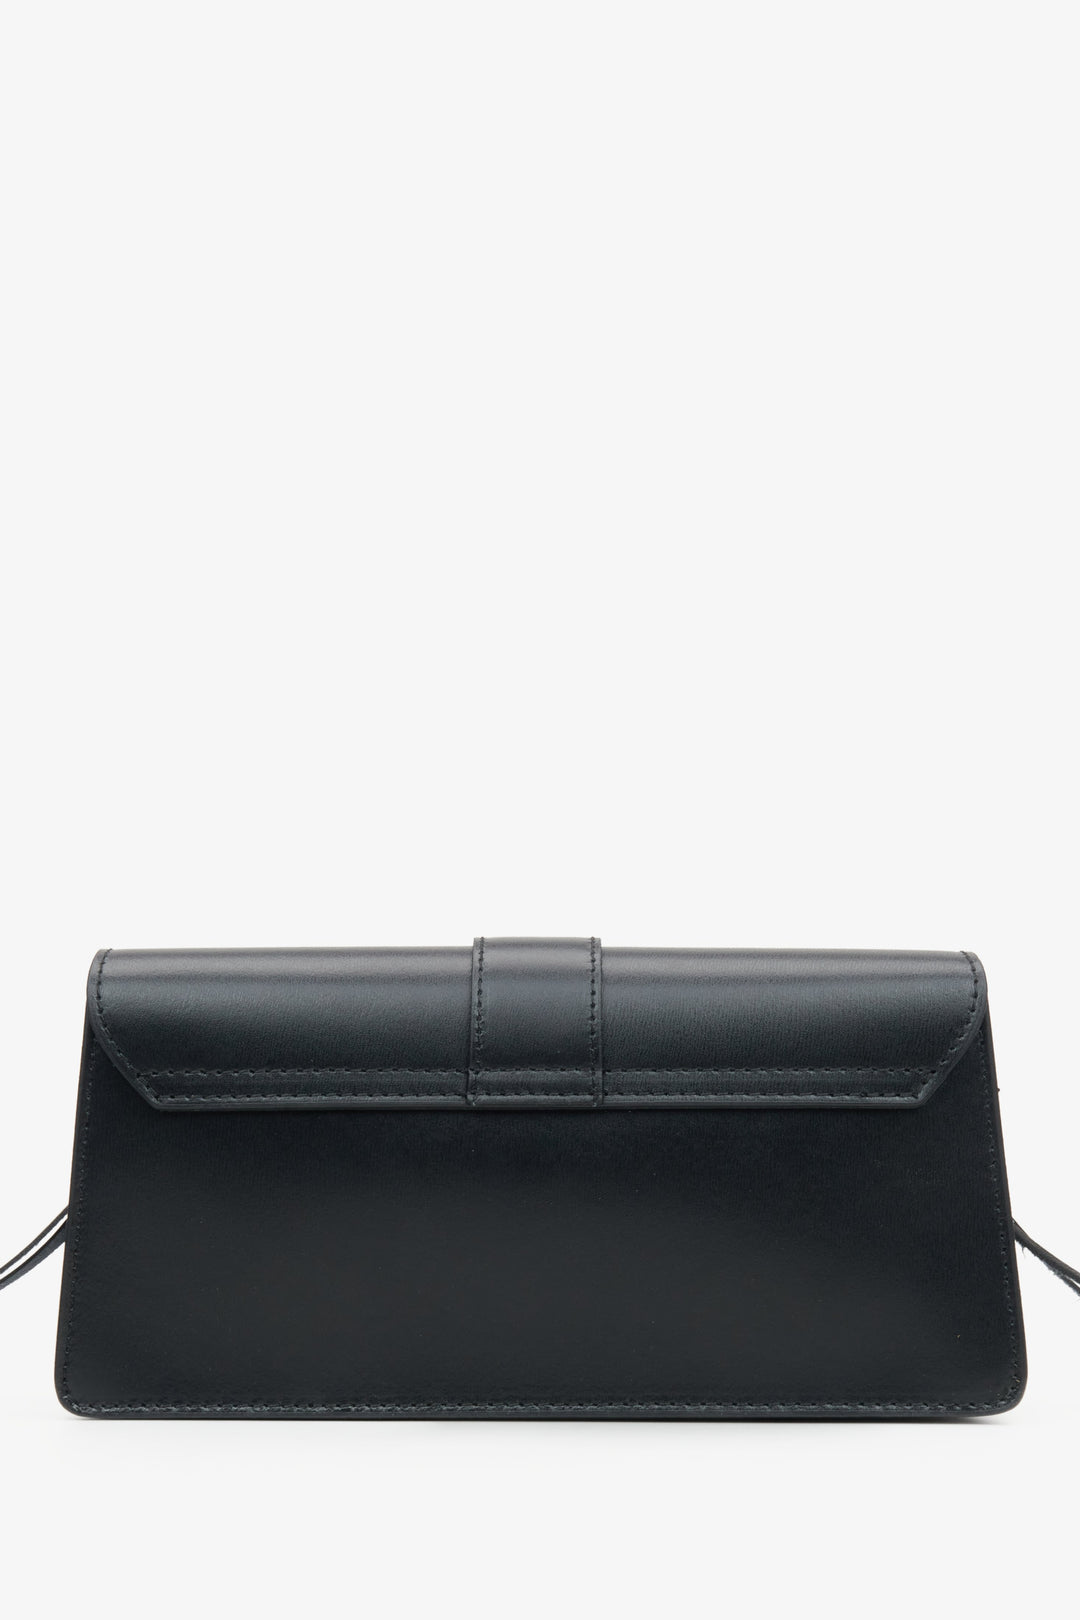 Skórzana torebka damska na ramię w kolorze czarnym Estro - tył modelu.